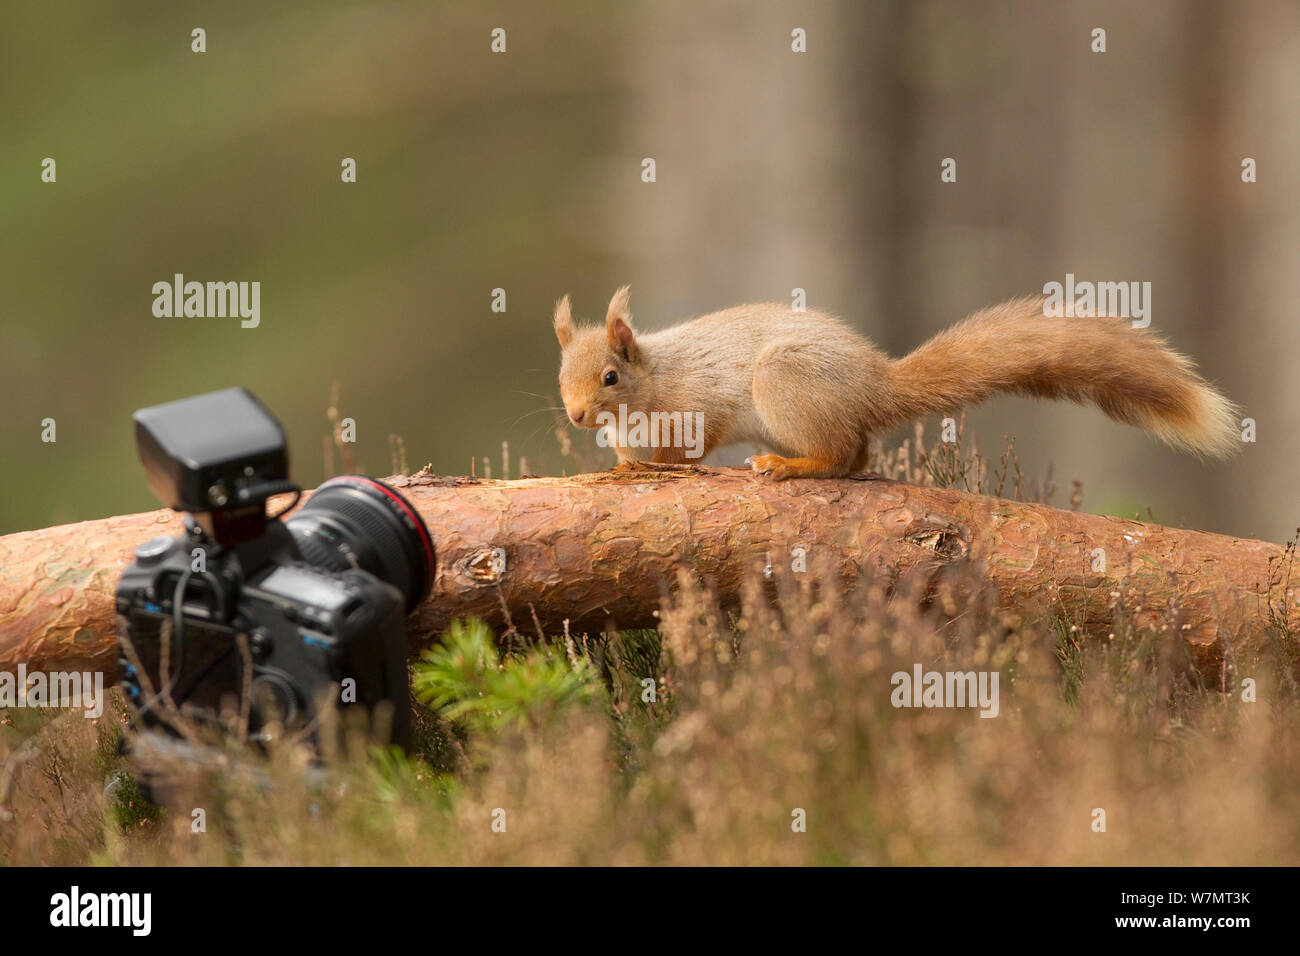 Red scoiattolo (Sciurus vulgaris) guardando la telecamera, Cairngorms National Park, Scozia, marzo 2012. Foto Stock